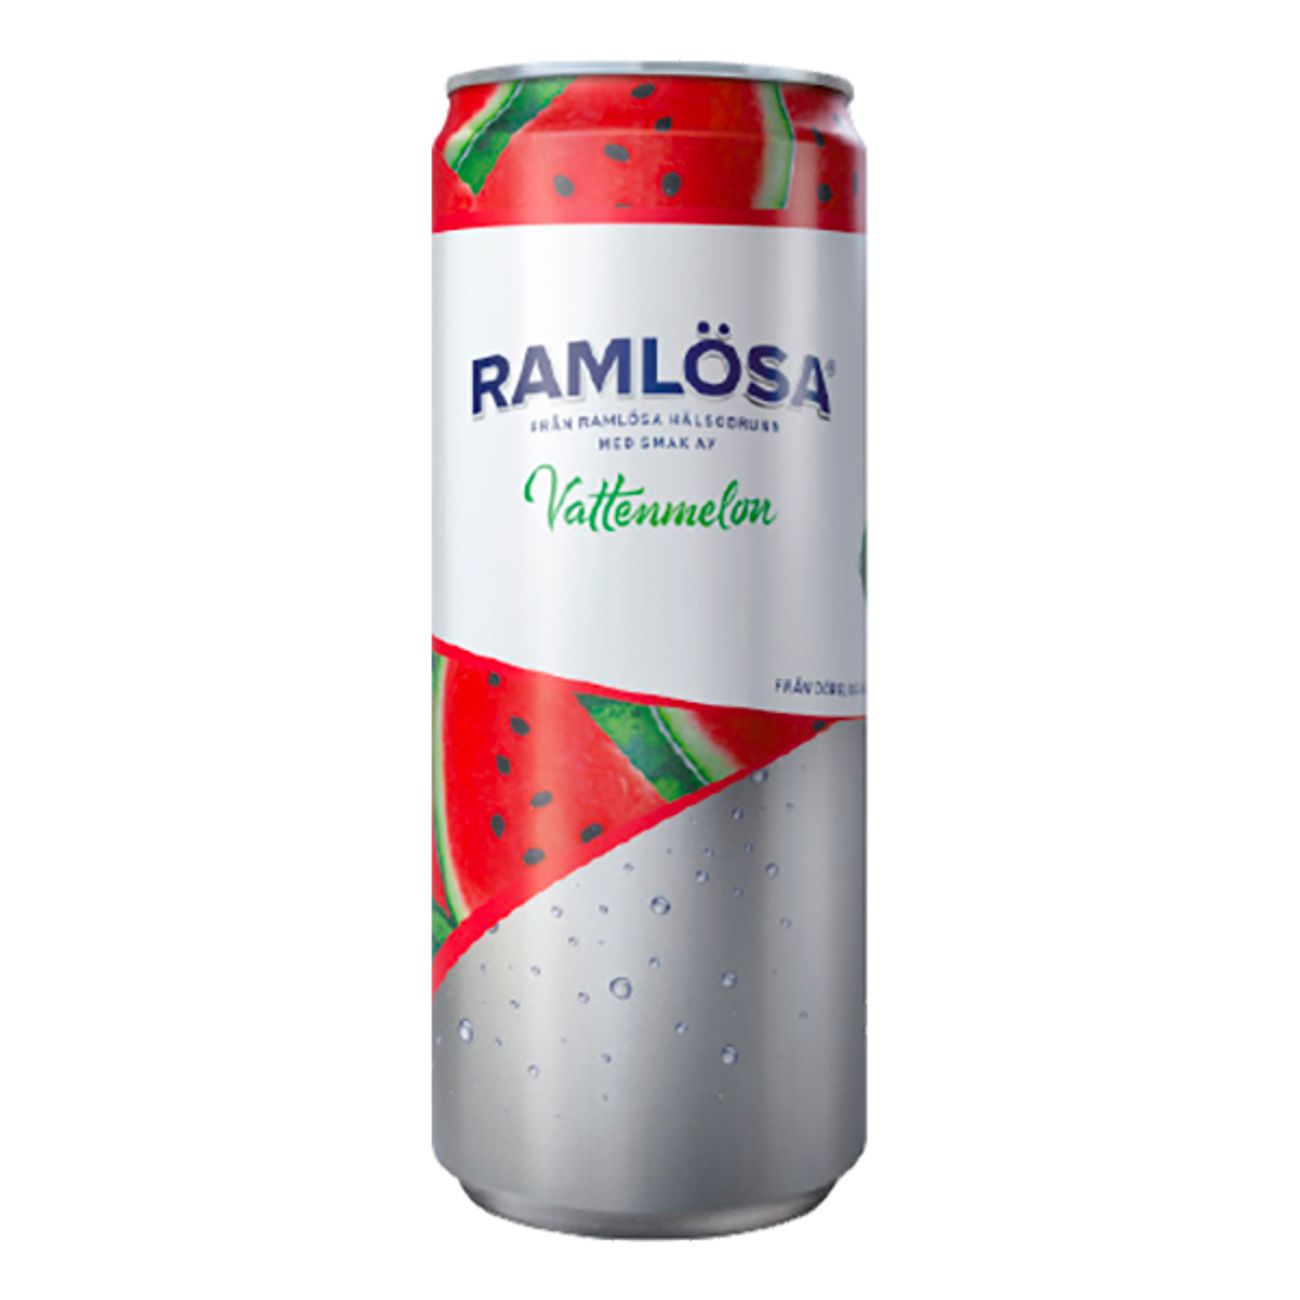 ramlosa-vattenmelon-75137-1